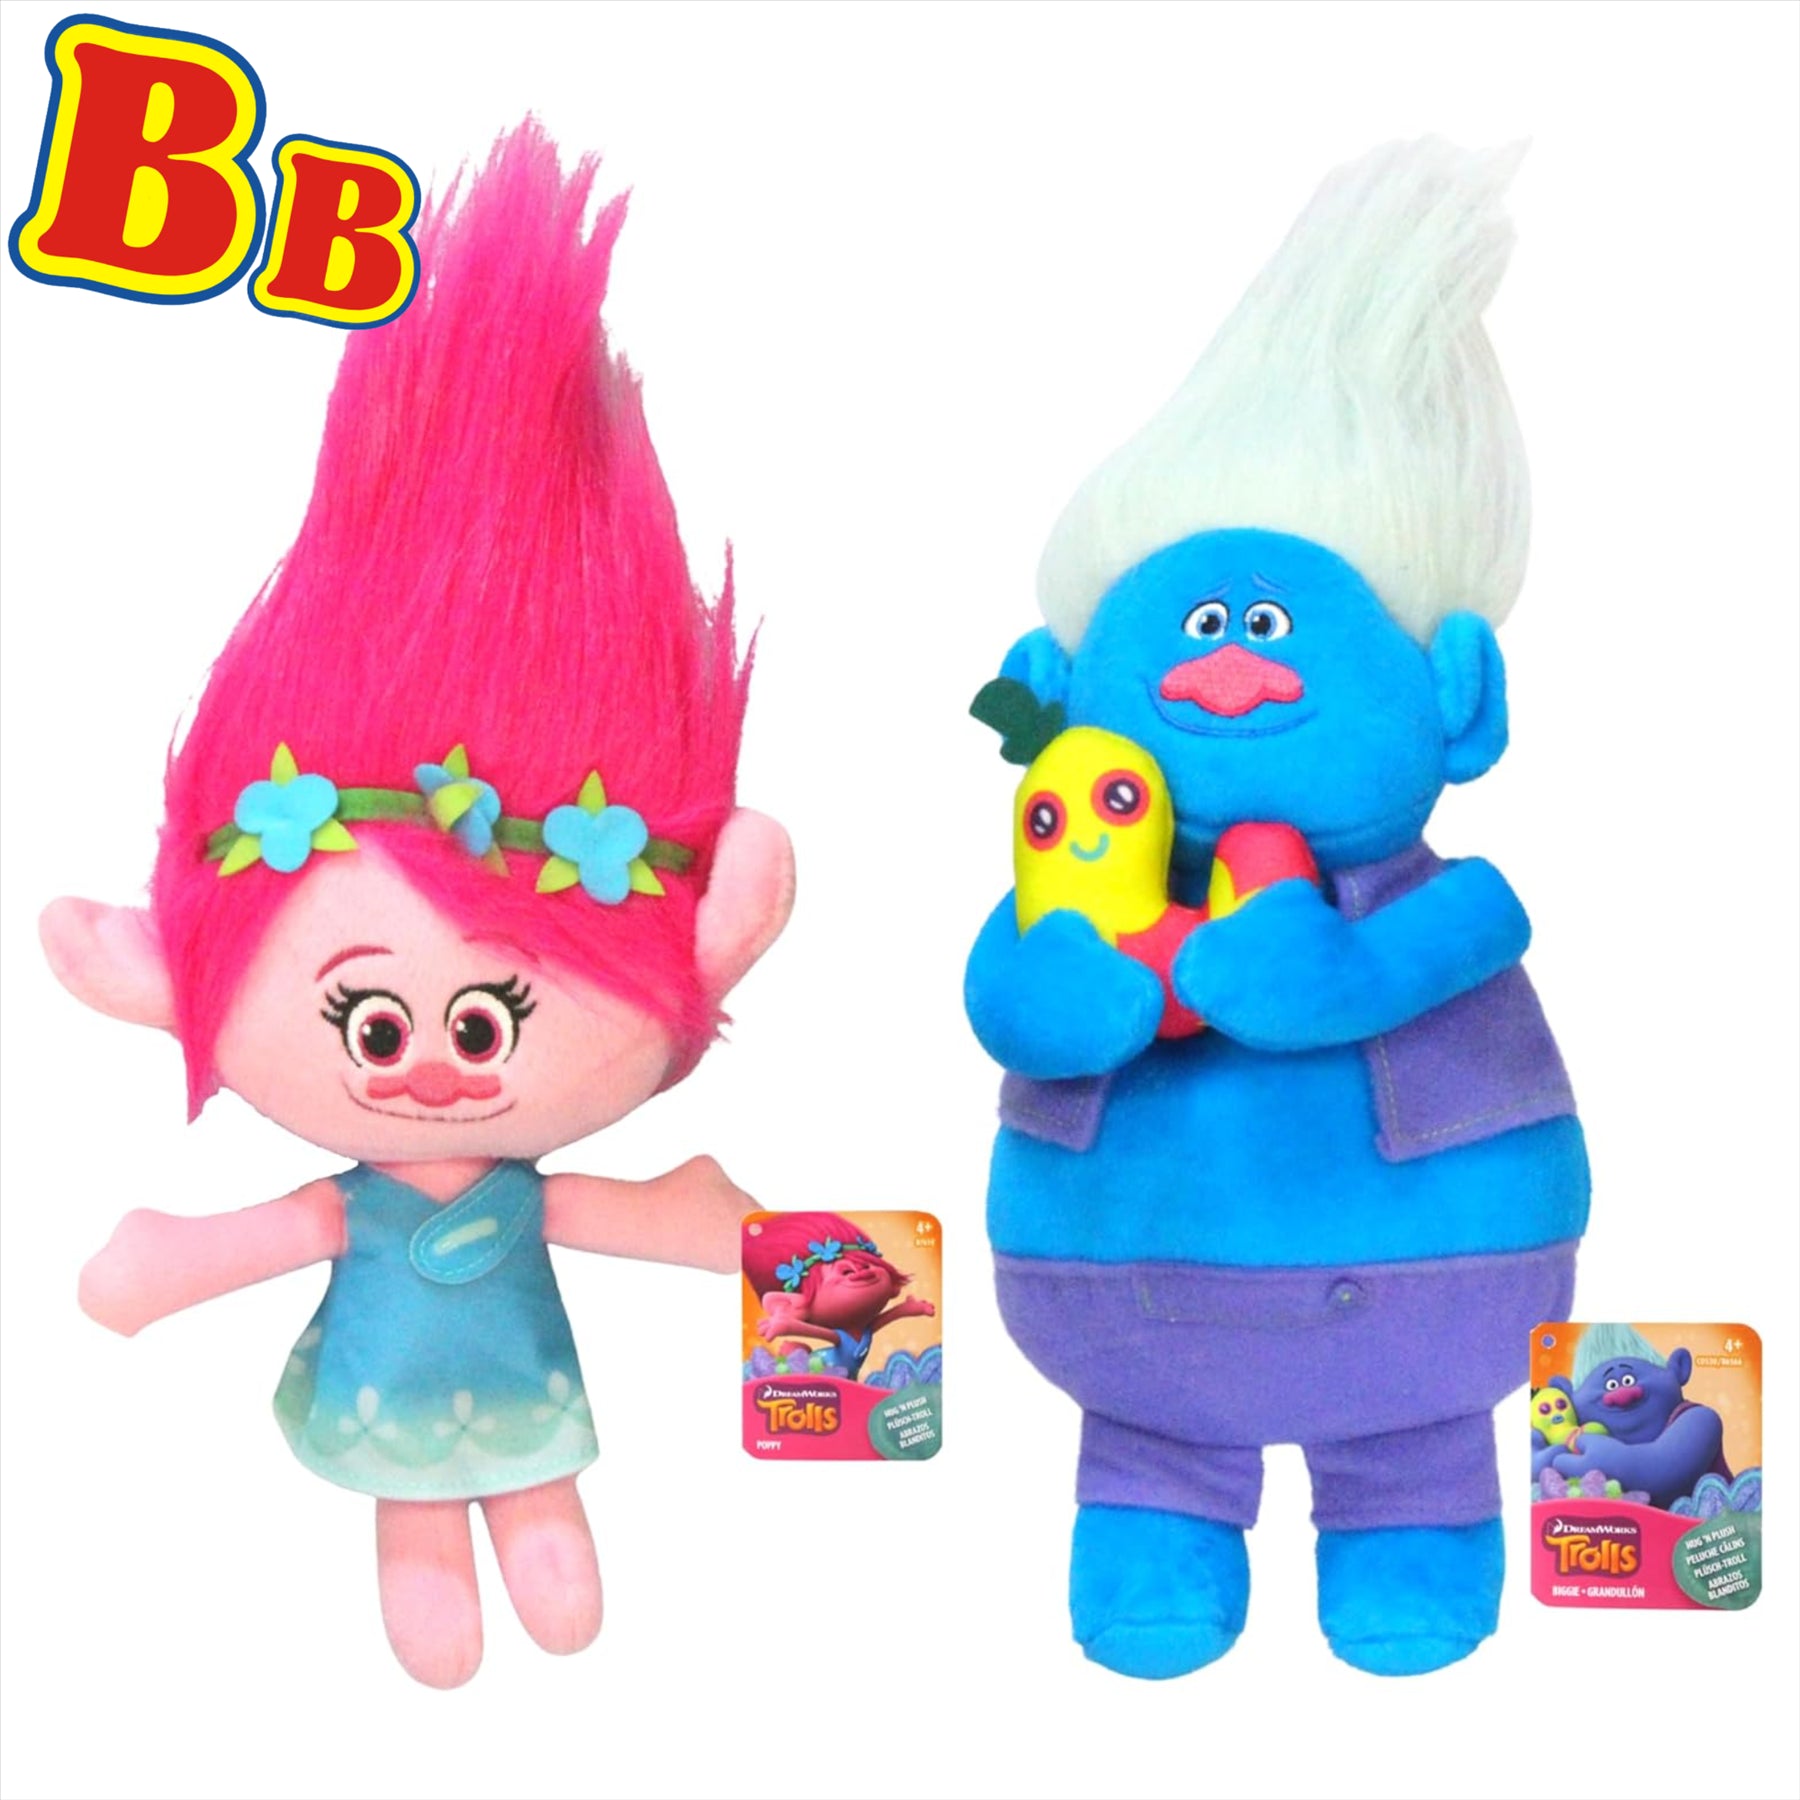 Trolls Soft Plush Toy 11" 28cm Twin Pack - Poppy & Biggie - Toptoys2u